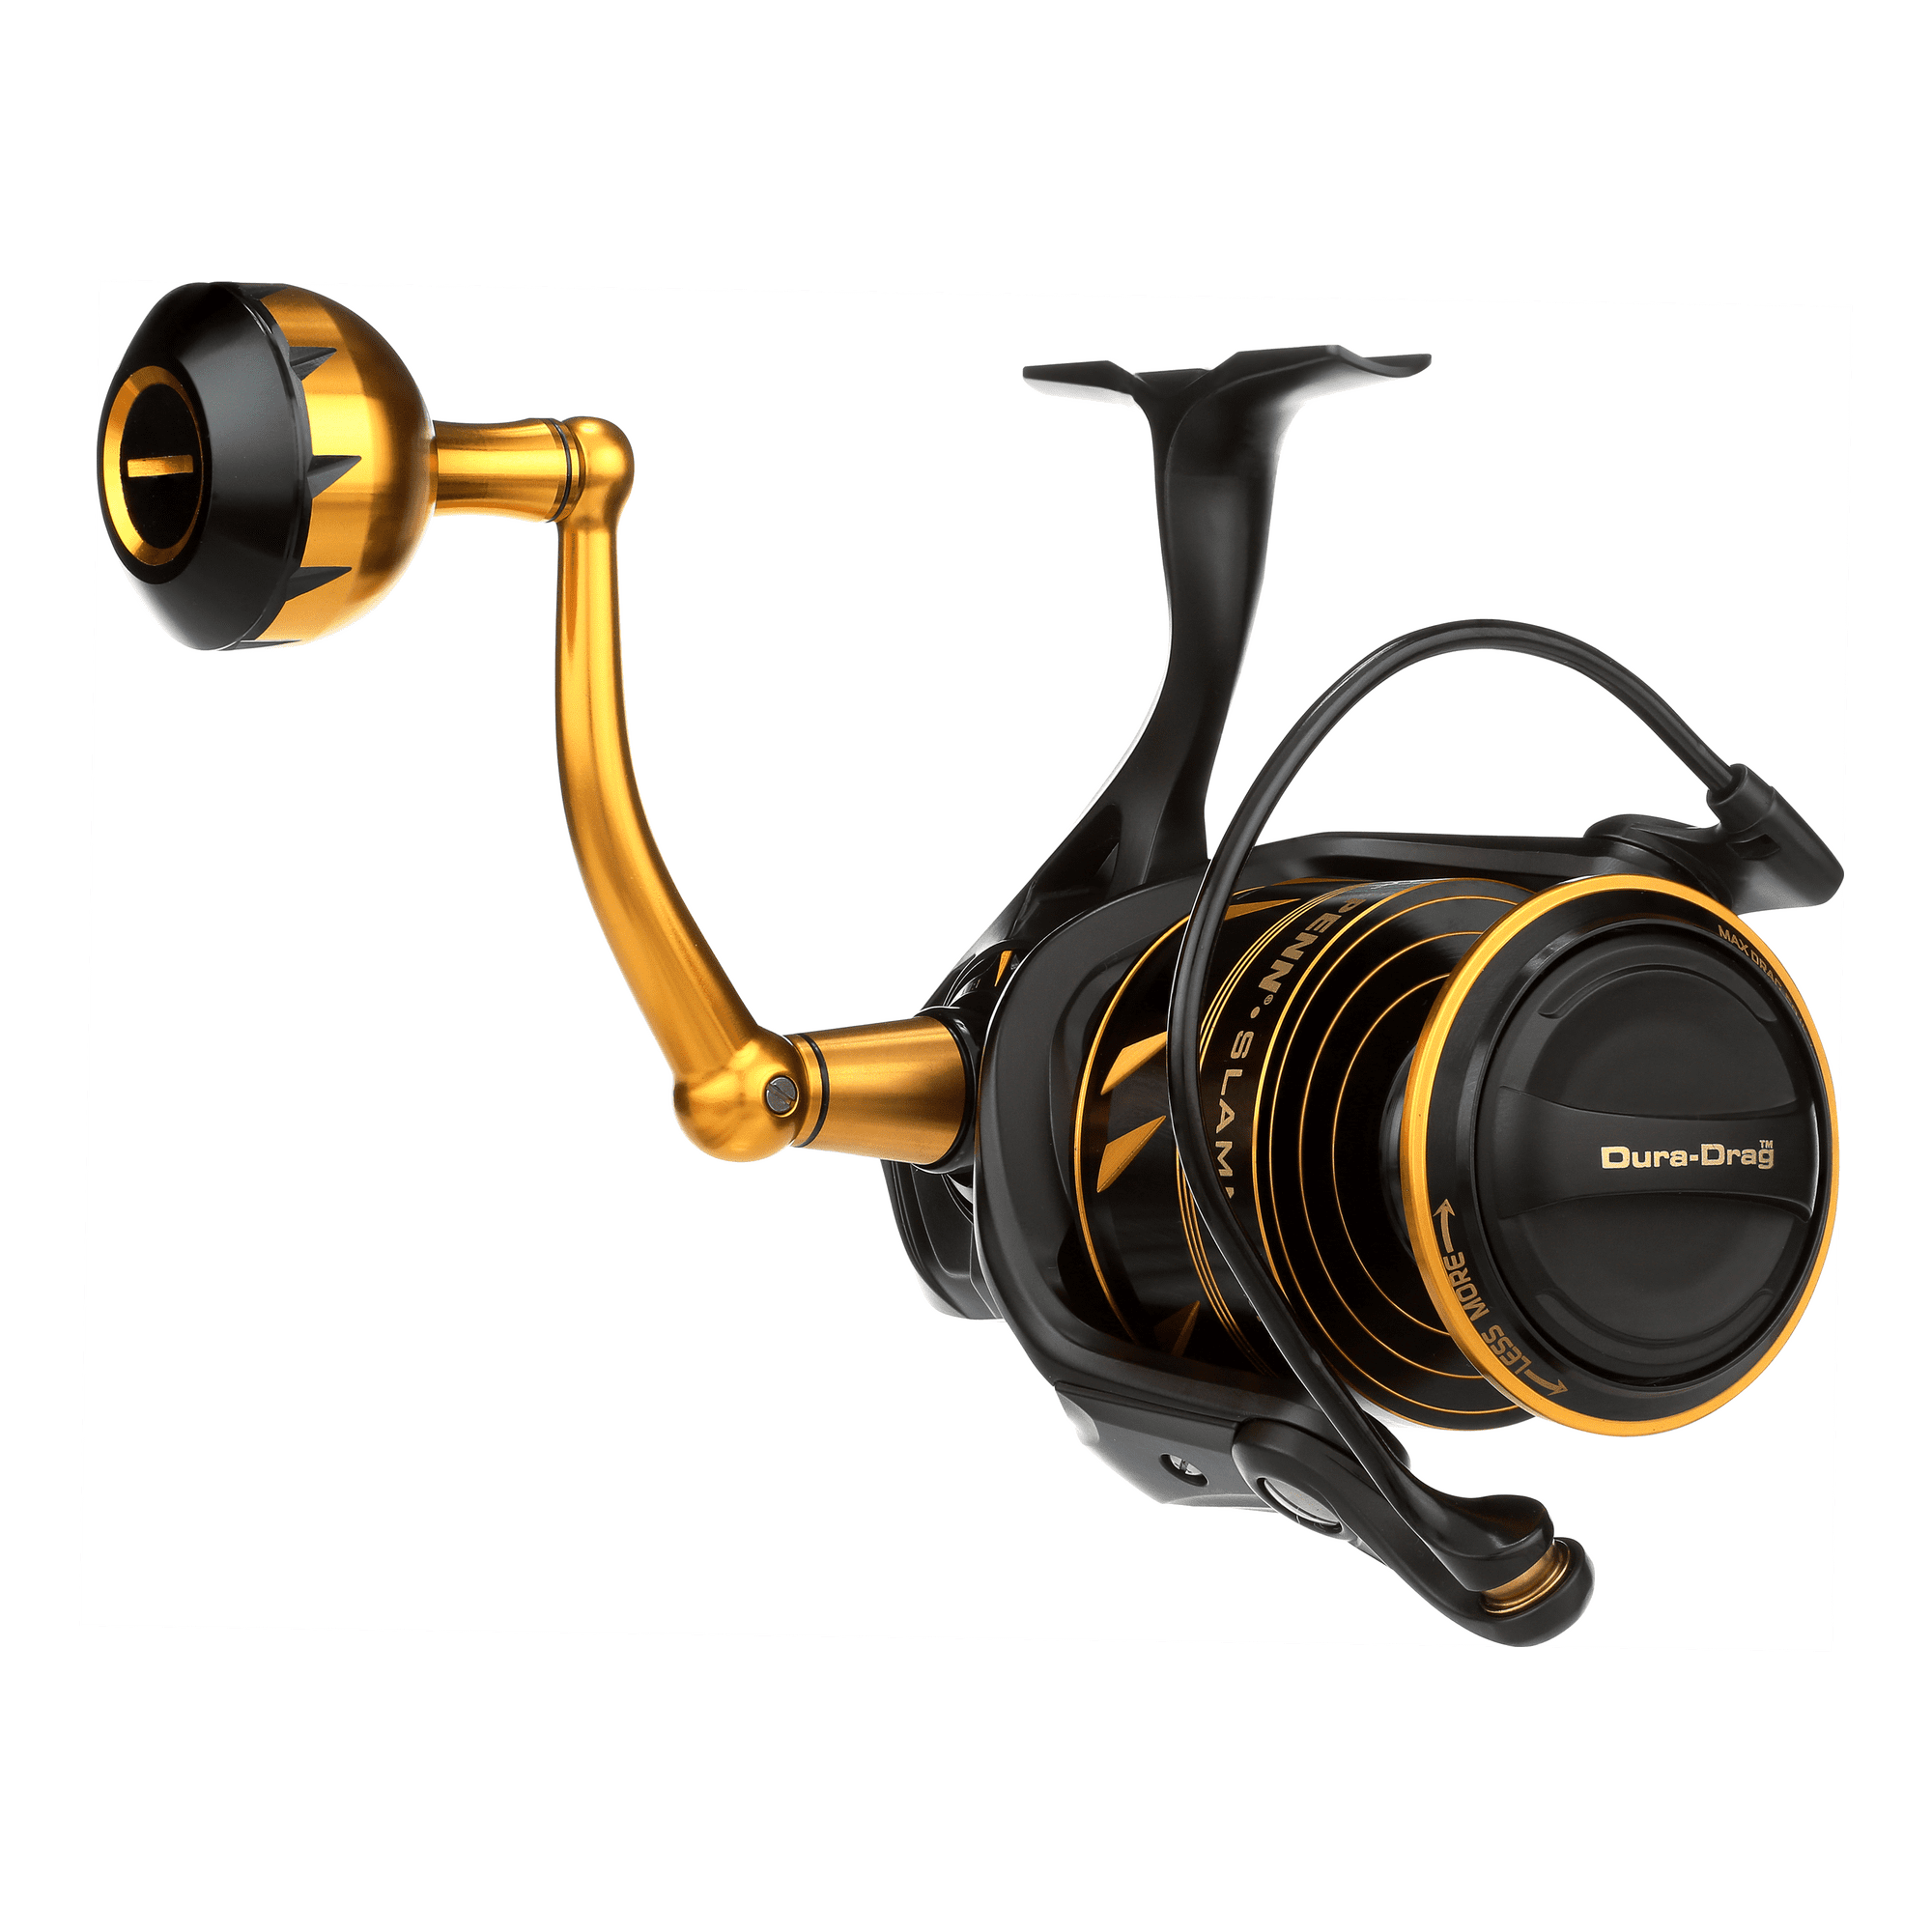 PENN Slammer IV Spinning Reel, Size 4500, 6.2:1 Gear Ratio 